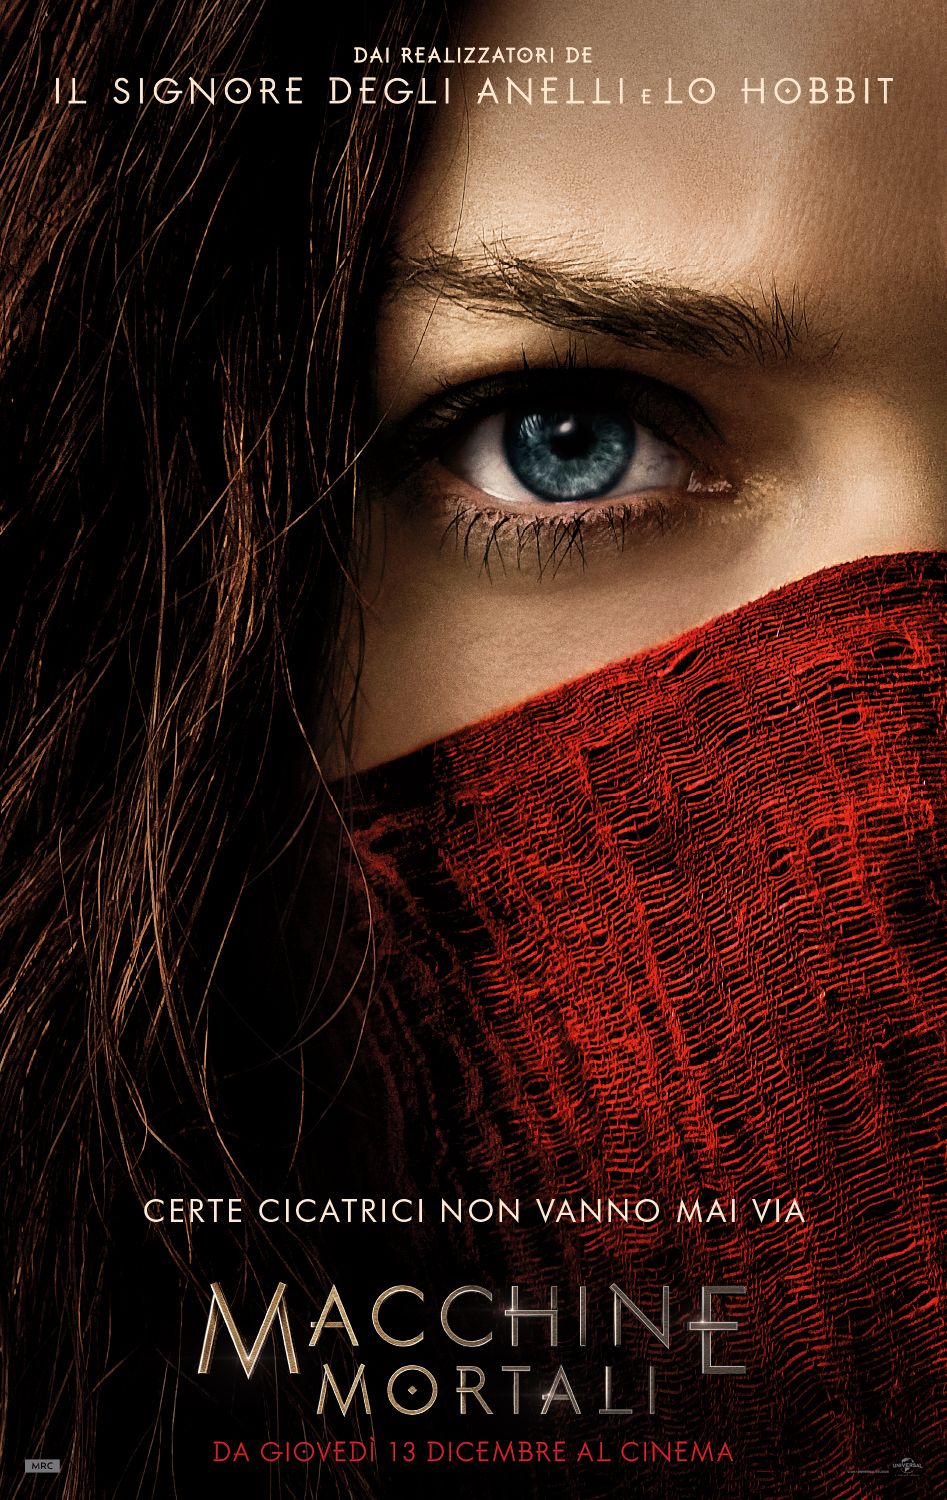 Macchine Mortali: il poster italiano del film